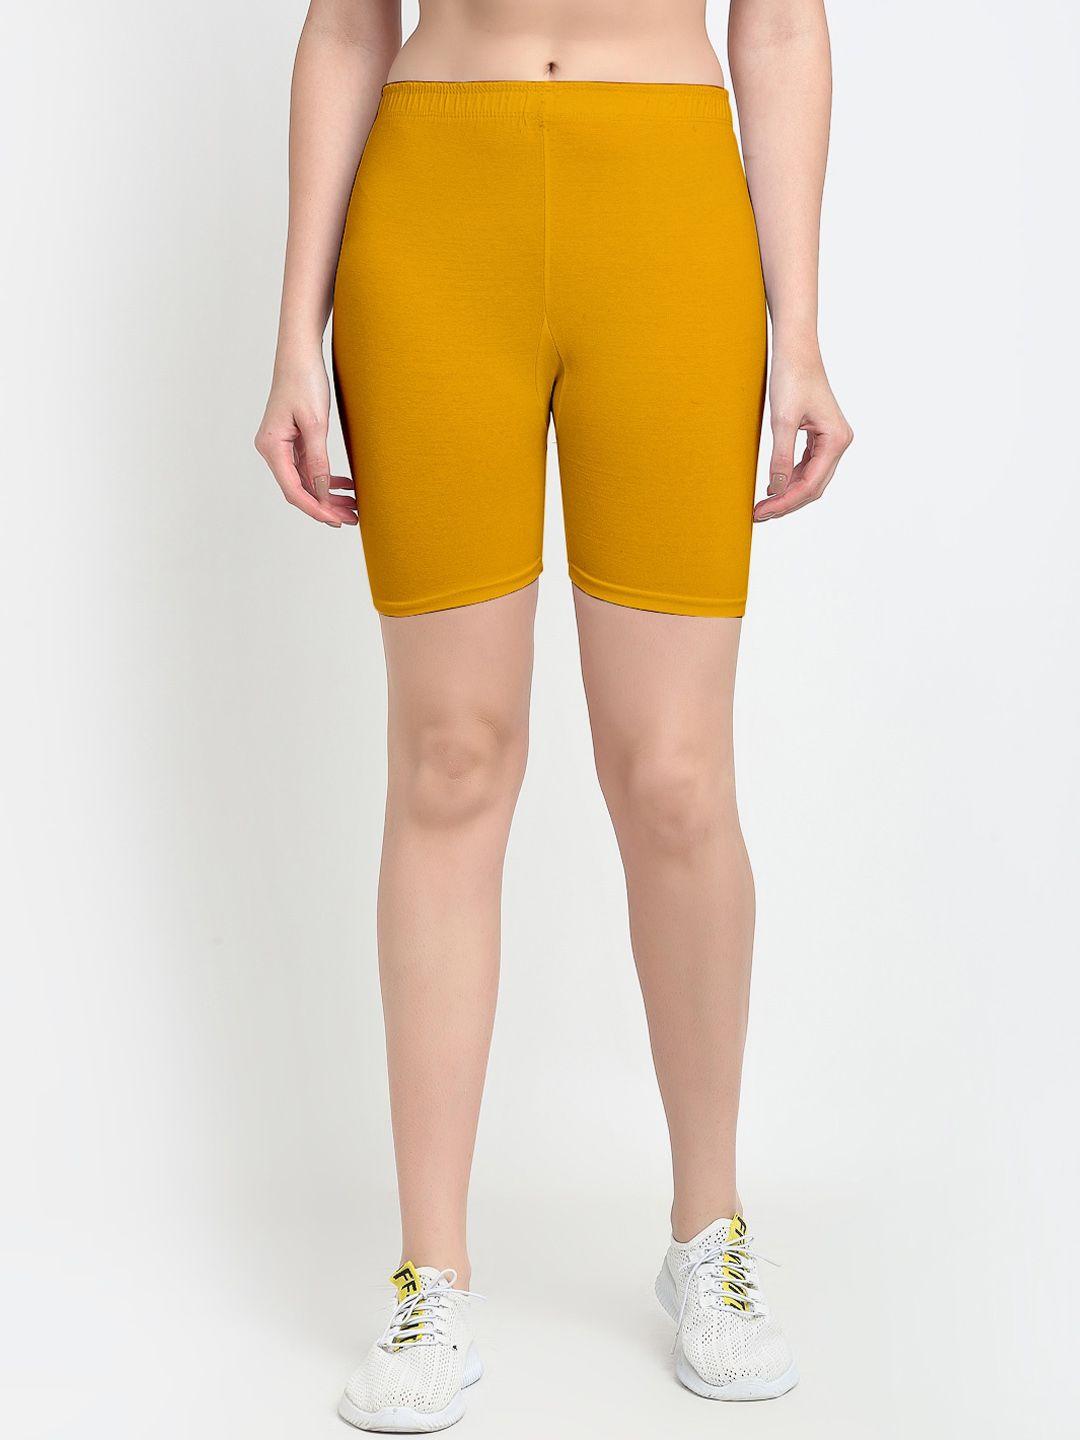 jinfo women yellow cycling sports shorts